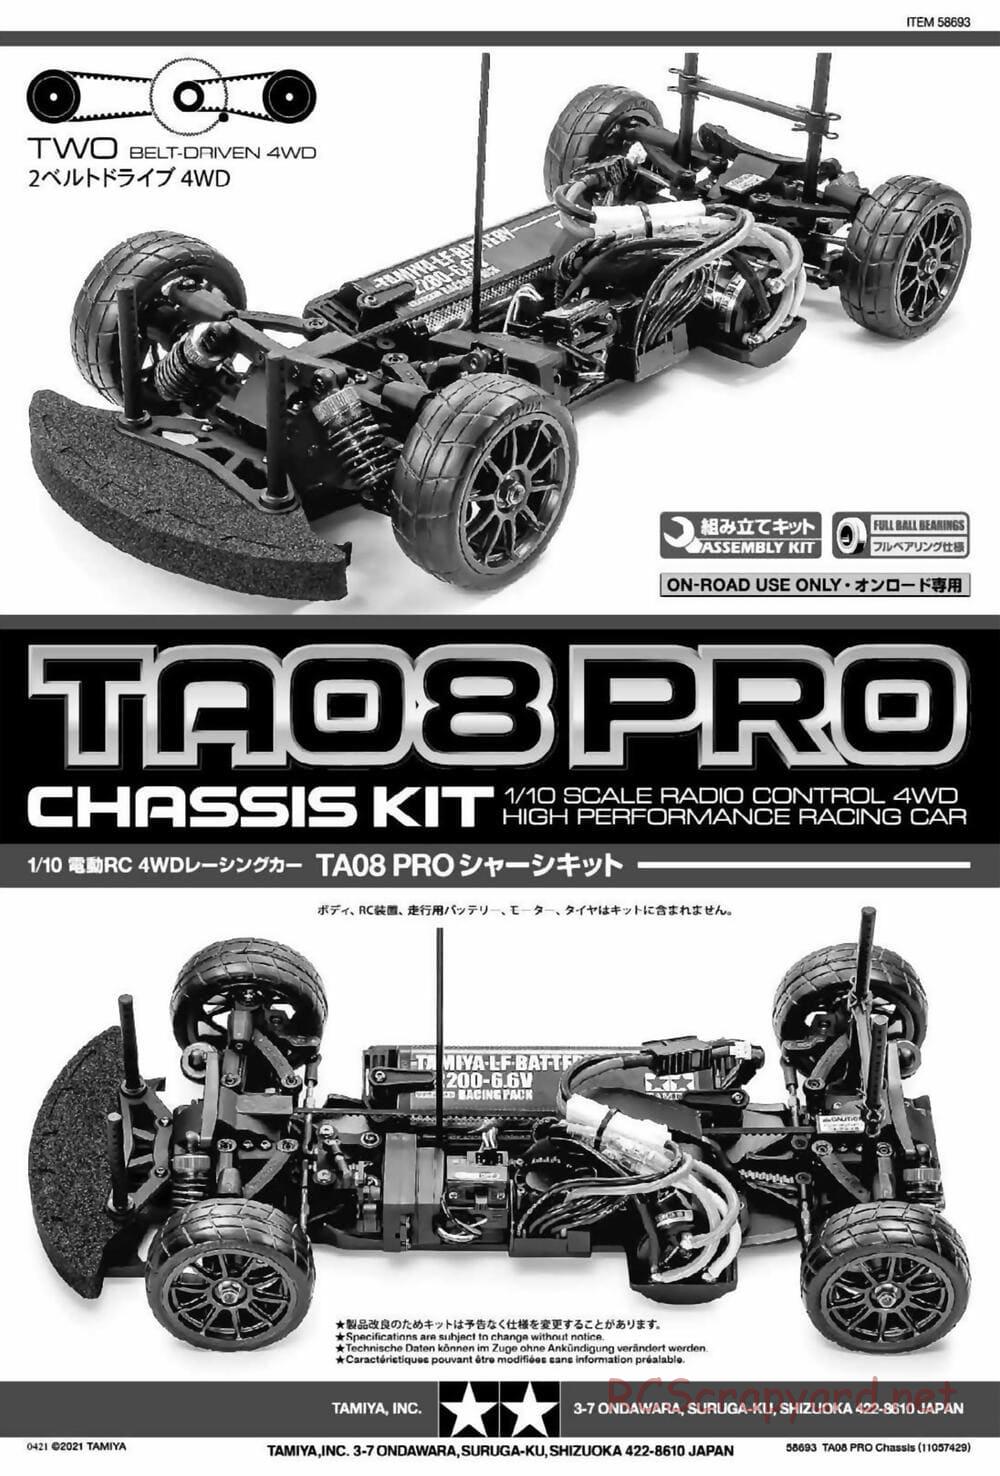 Tamiya - TA08 Pro Chassis - Manual - Page 1